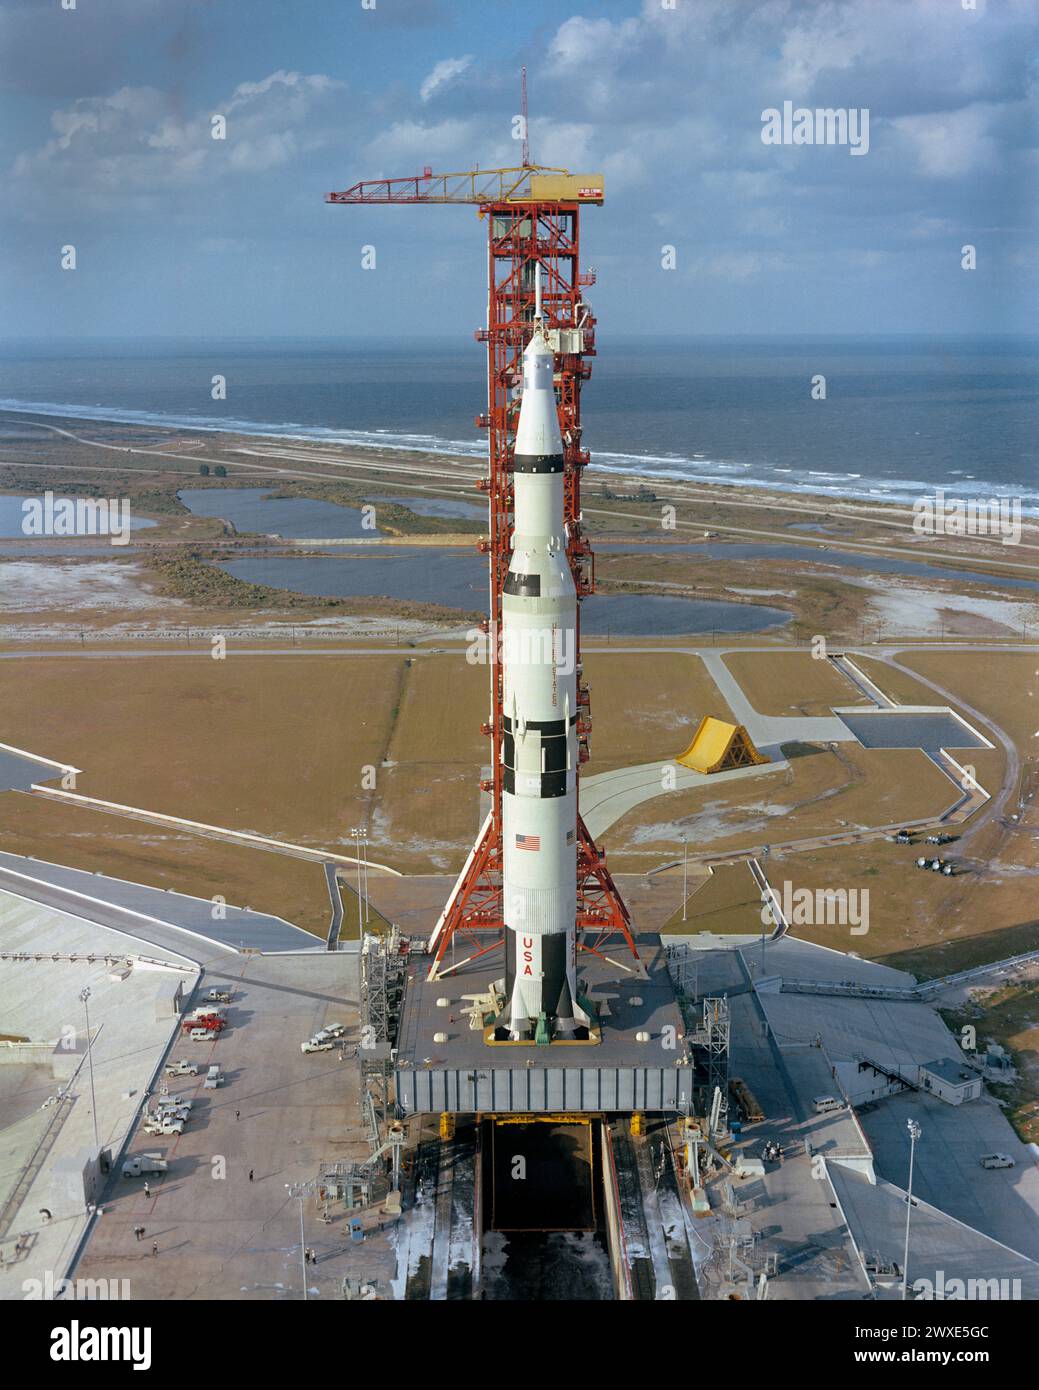 Apollo/Saturn V sulla rampa di lancio Vista ad alto angolo del Pad A, Launch Complex 39, Kennedy Space Center, che mostra la navicella spaziale Apollo 4 017/Saturn 501 senza equipaggio, la missione spaziale orbitale terrestre è in fase di preparazione per il lancio. L'enorme superficie di 363 piedi Il veicolo spaziale Tall Apollo/Saturn V è stato lanciato alle 7:00:01 EST del 9 novembre 1967. Un'immagine NASA ottimizzata. Credito: NASA Foto Stock